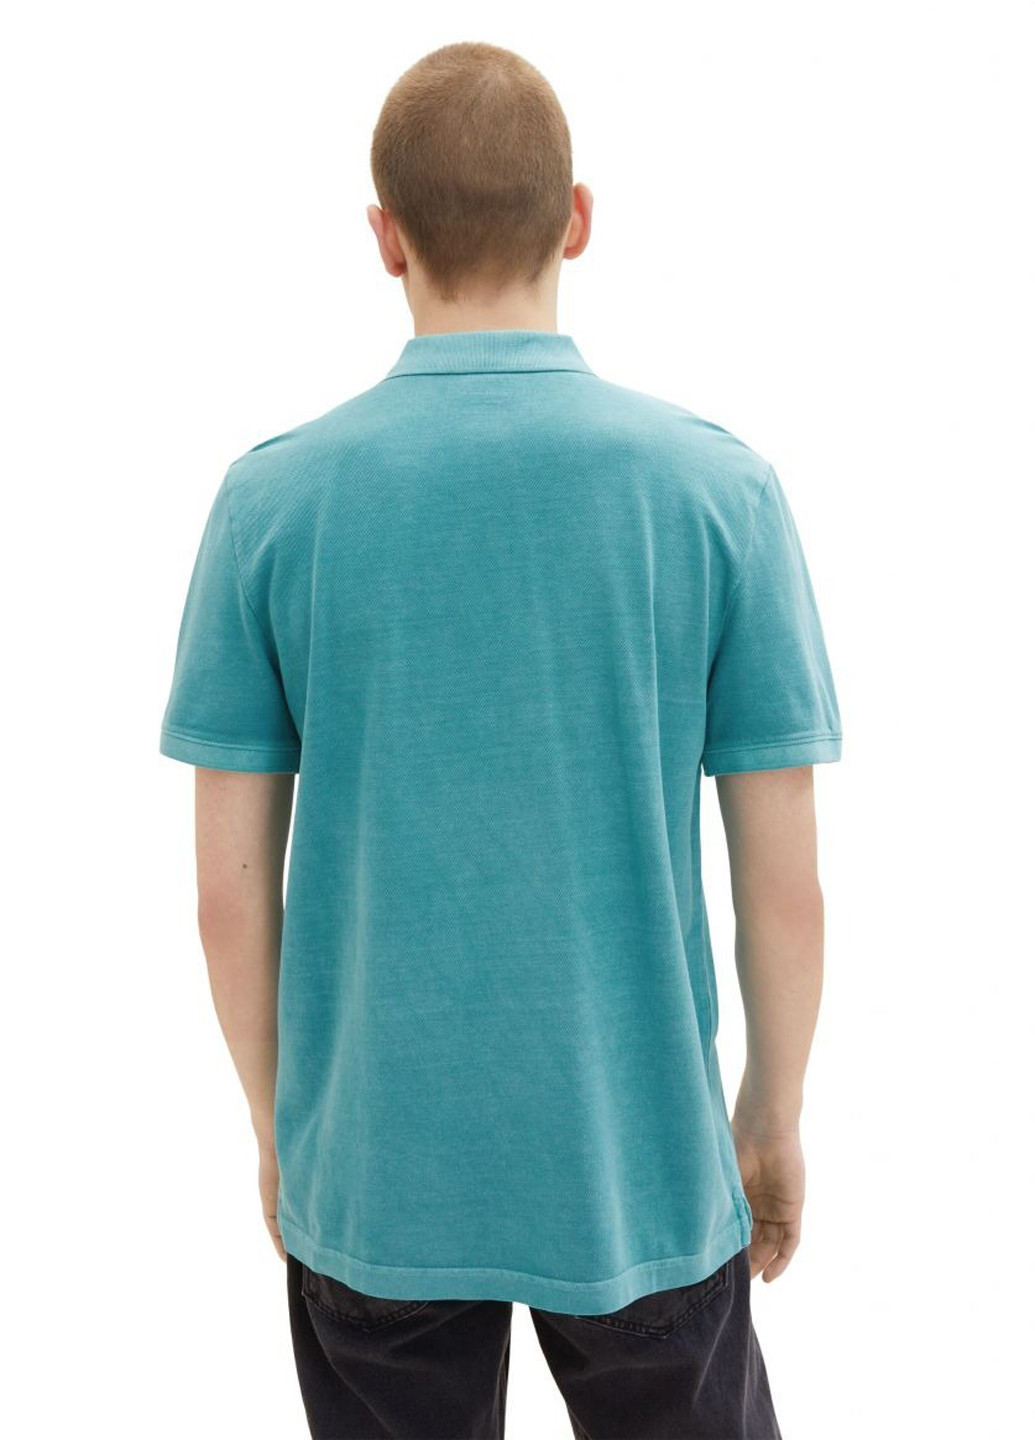 Бирюзовая футболка-поло для мужчин Tom Tailor однотонная